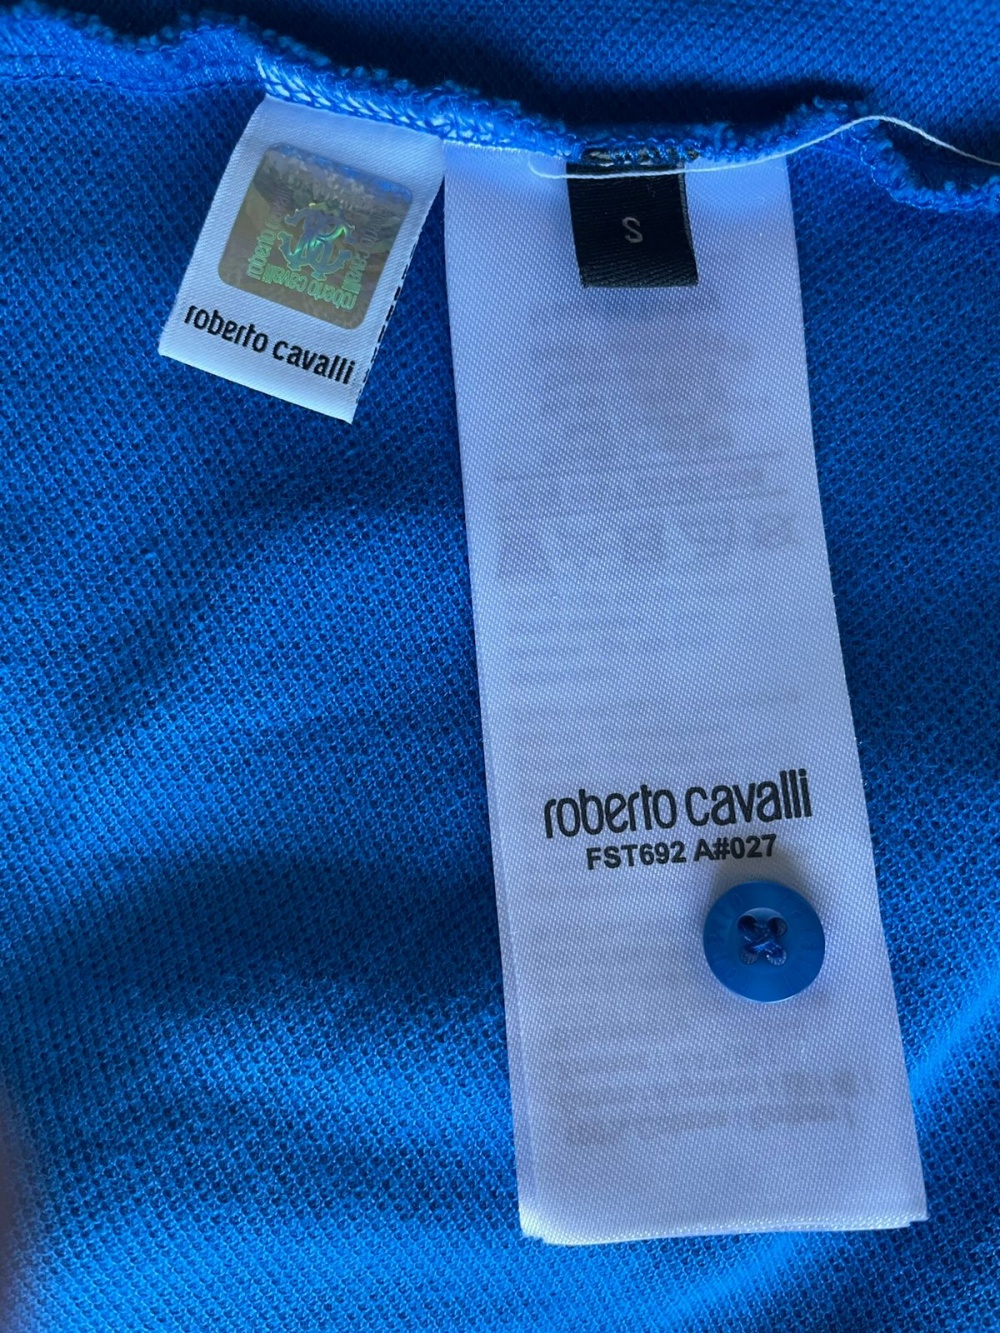 Рубашка мужская поло Roberto Cavalli S